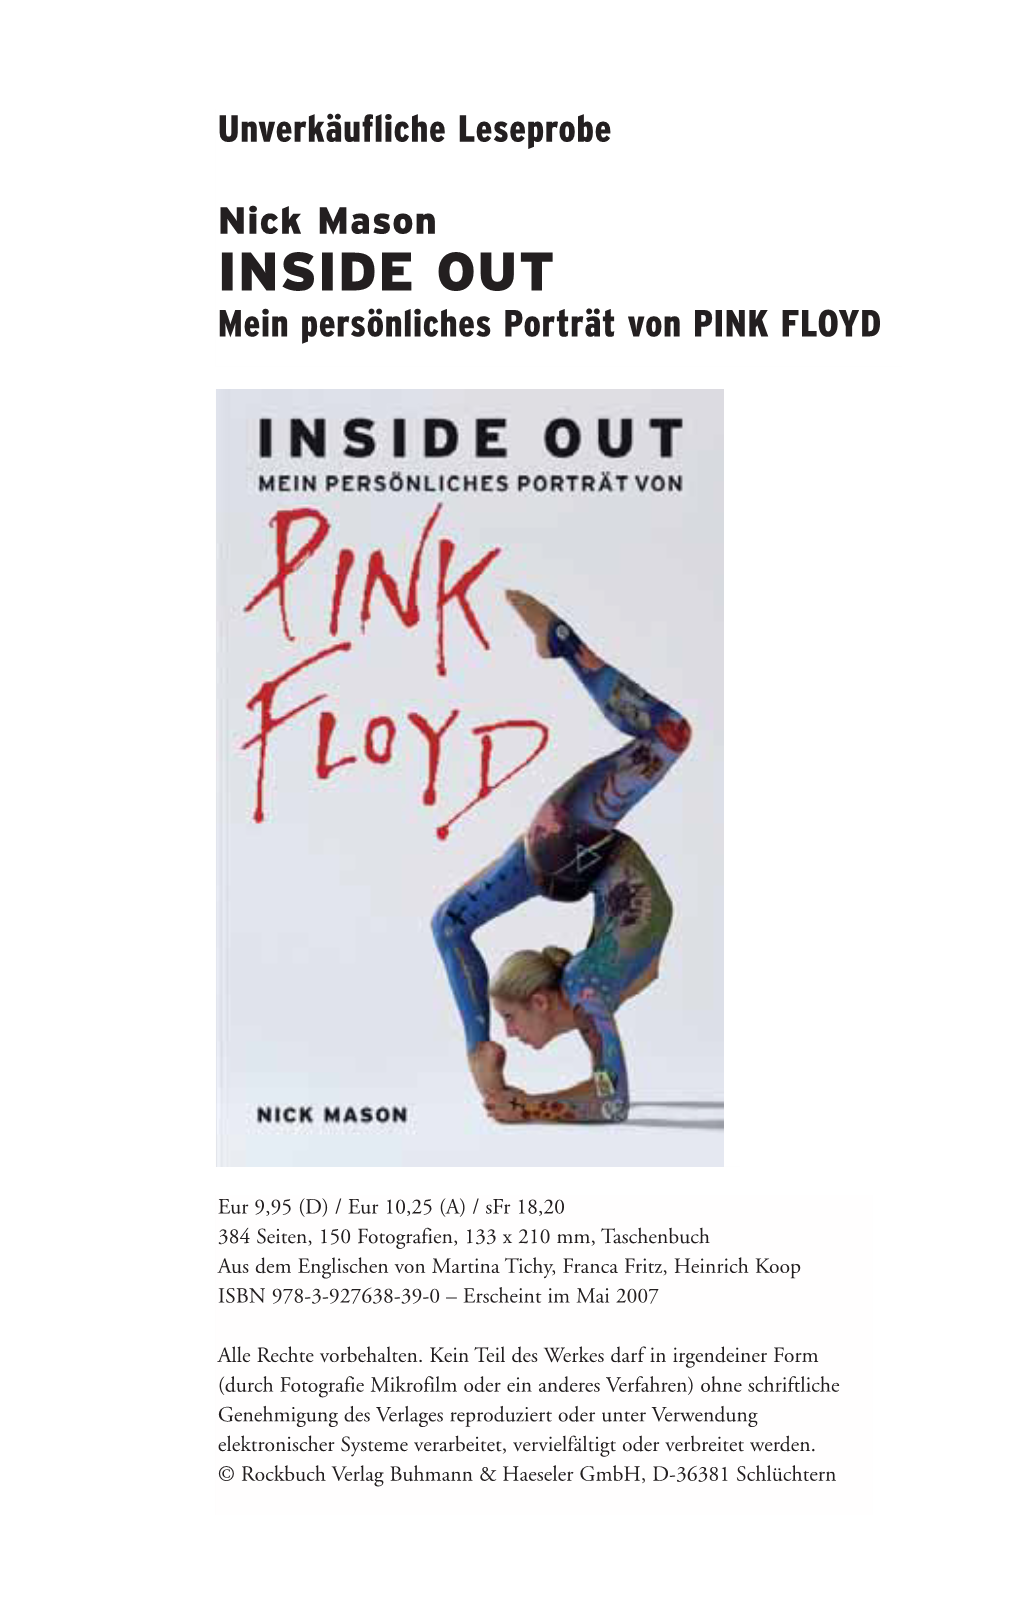 INSIDE out Mein Persönliches Porträt Von PINK FLOYD